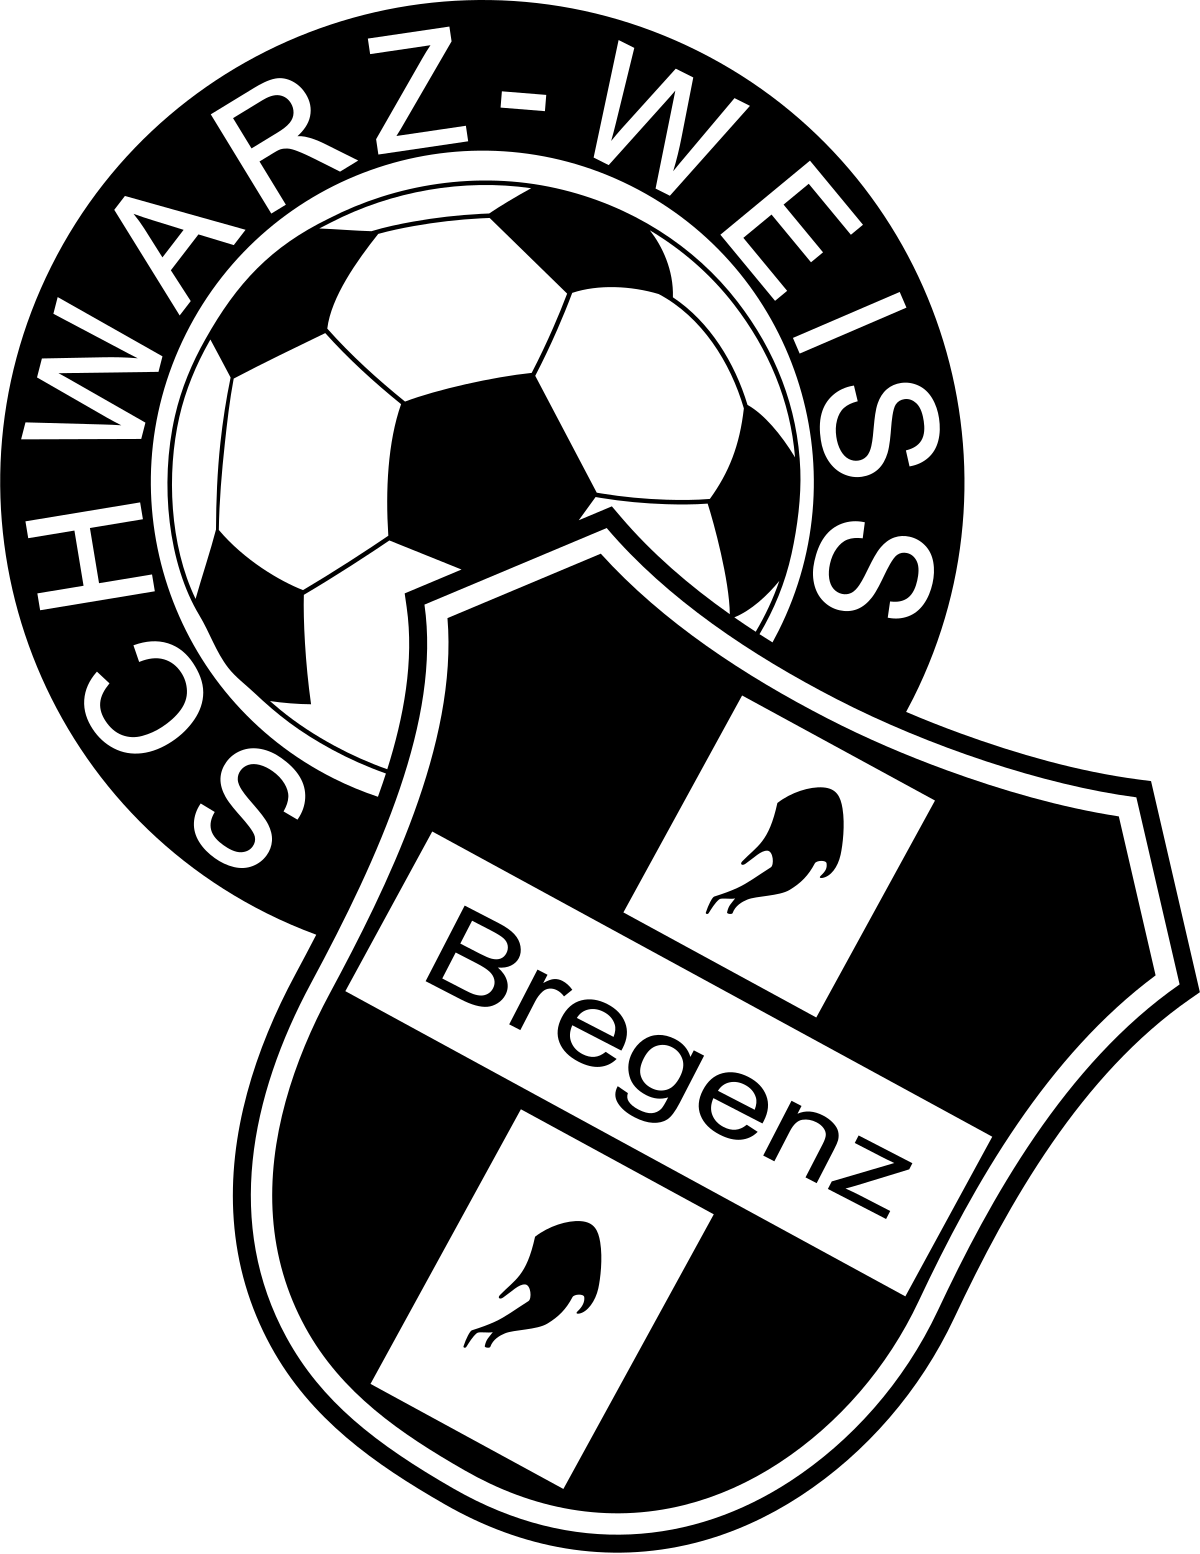 Schwarz Weiss Bregenz